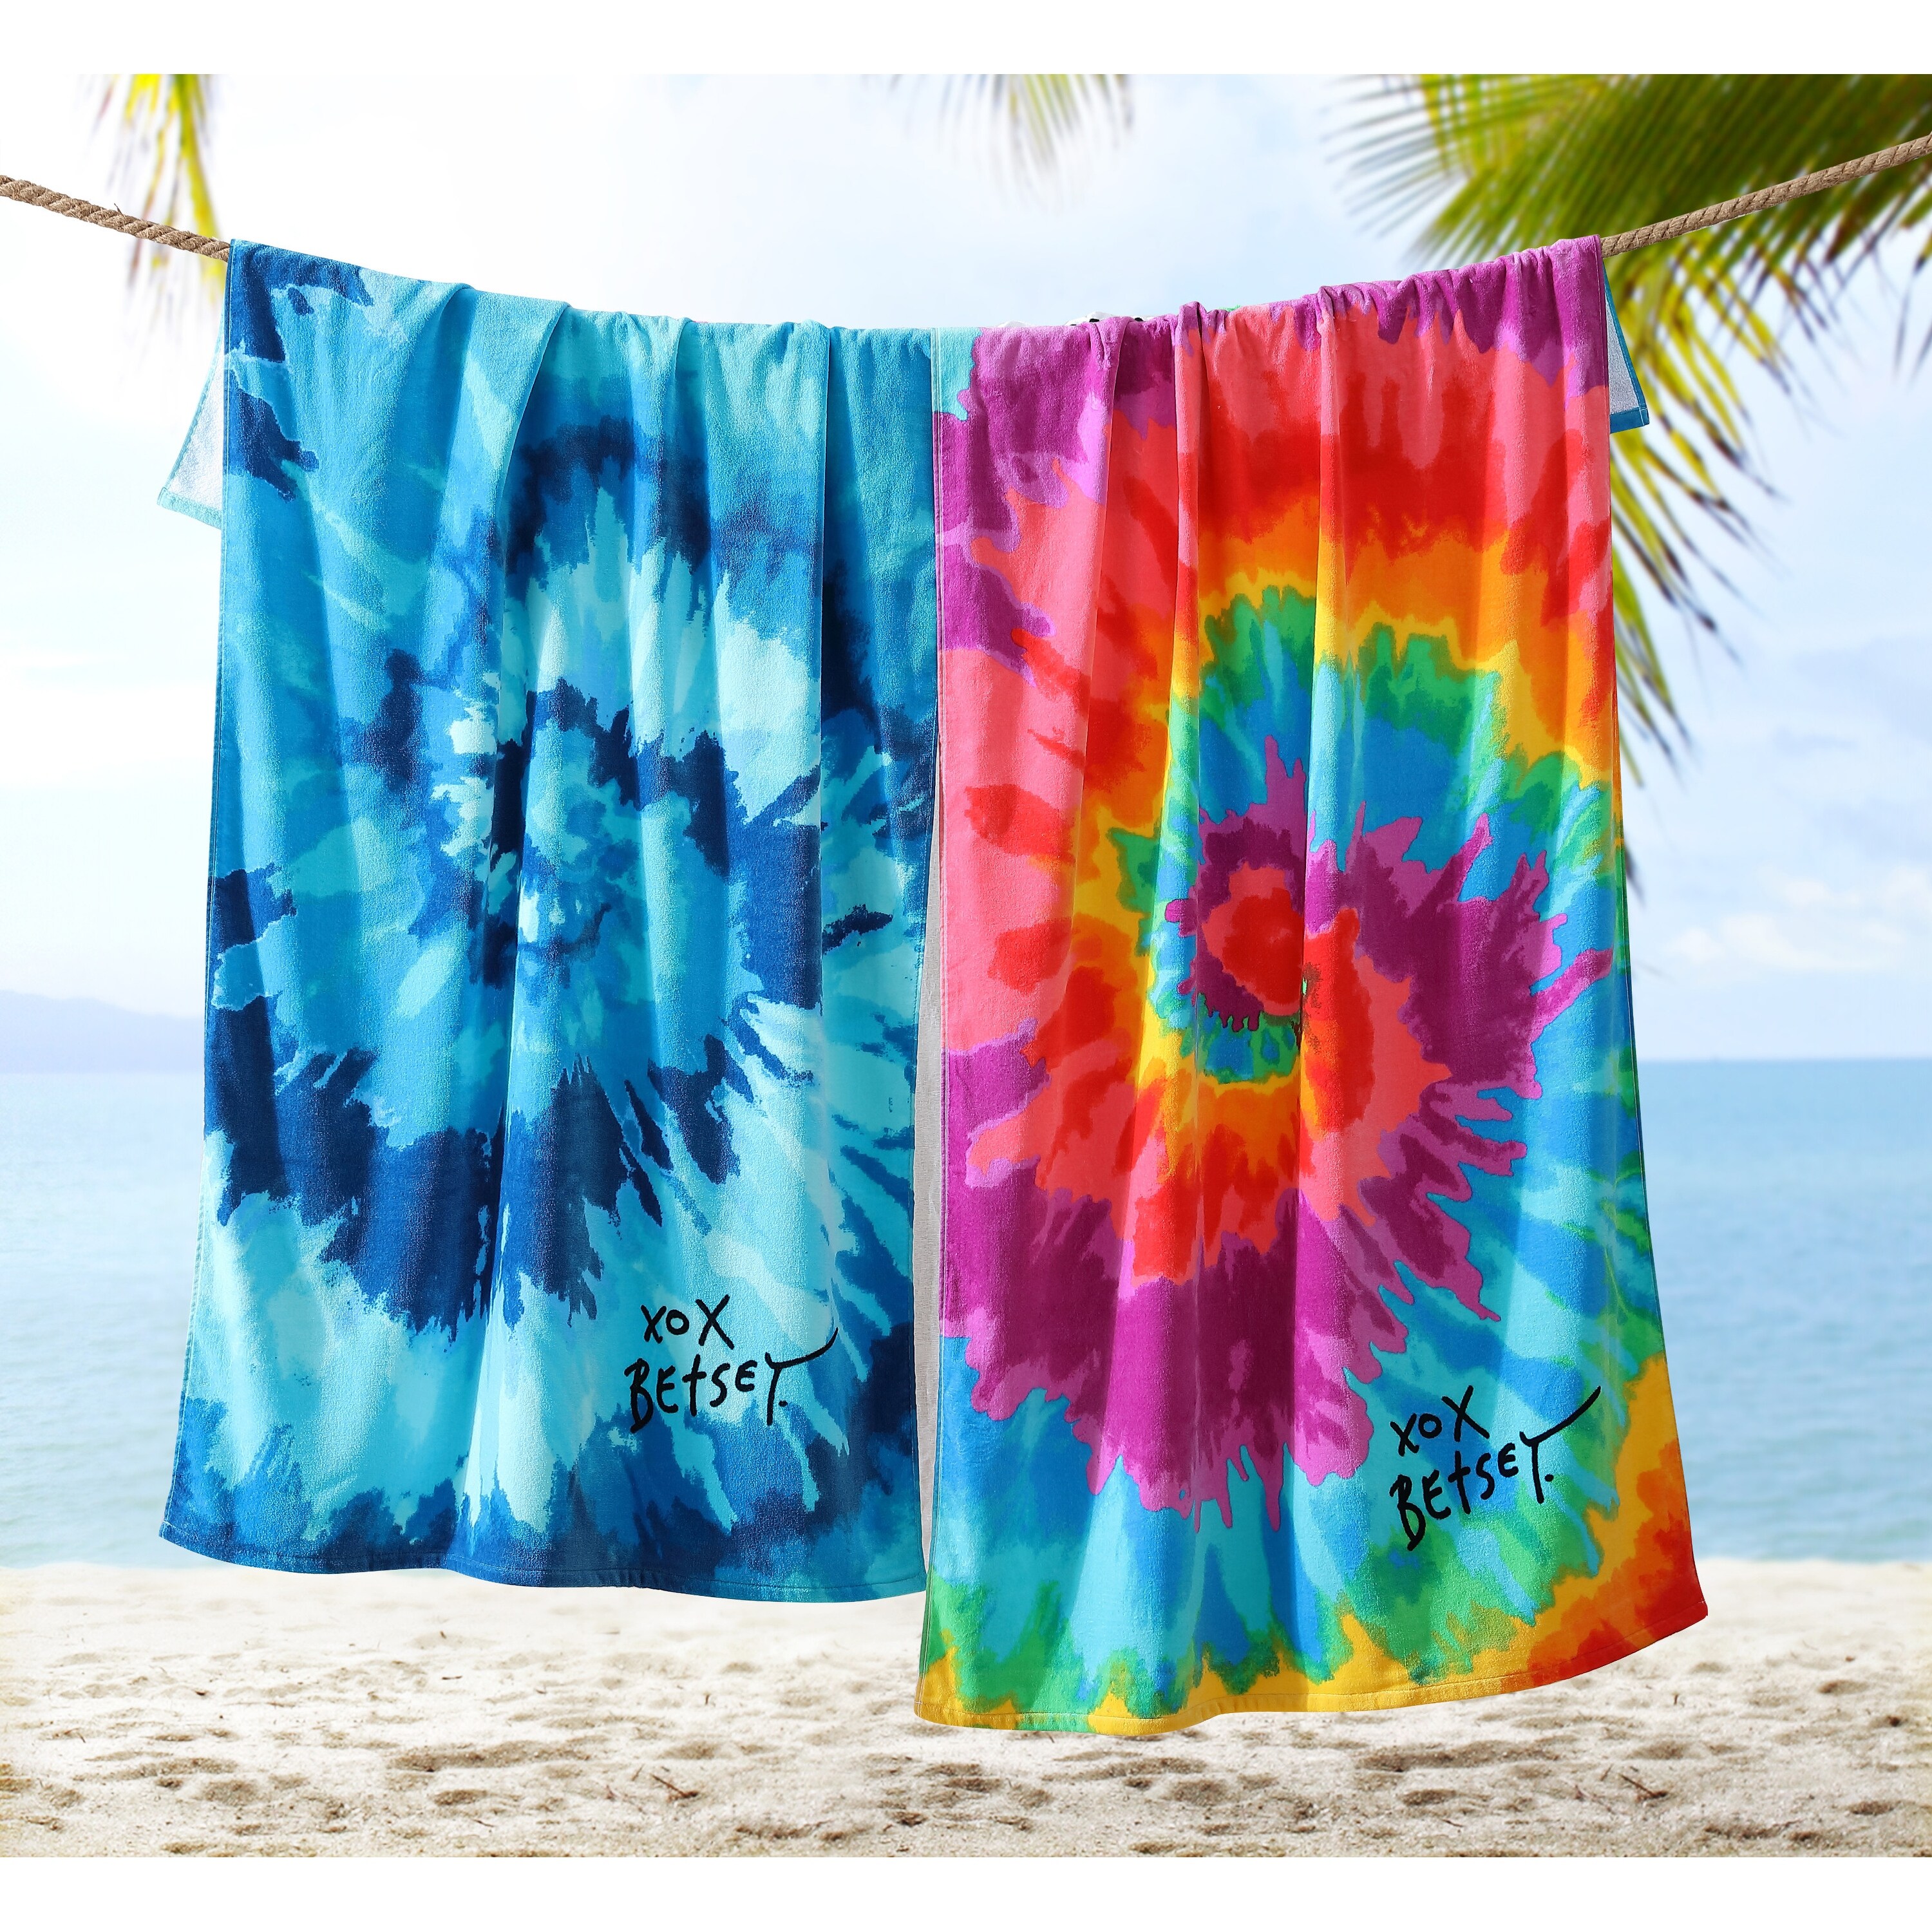 Betsey Johnson Malibu Large Beach Towel NWT 